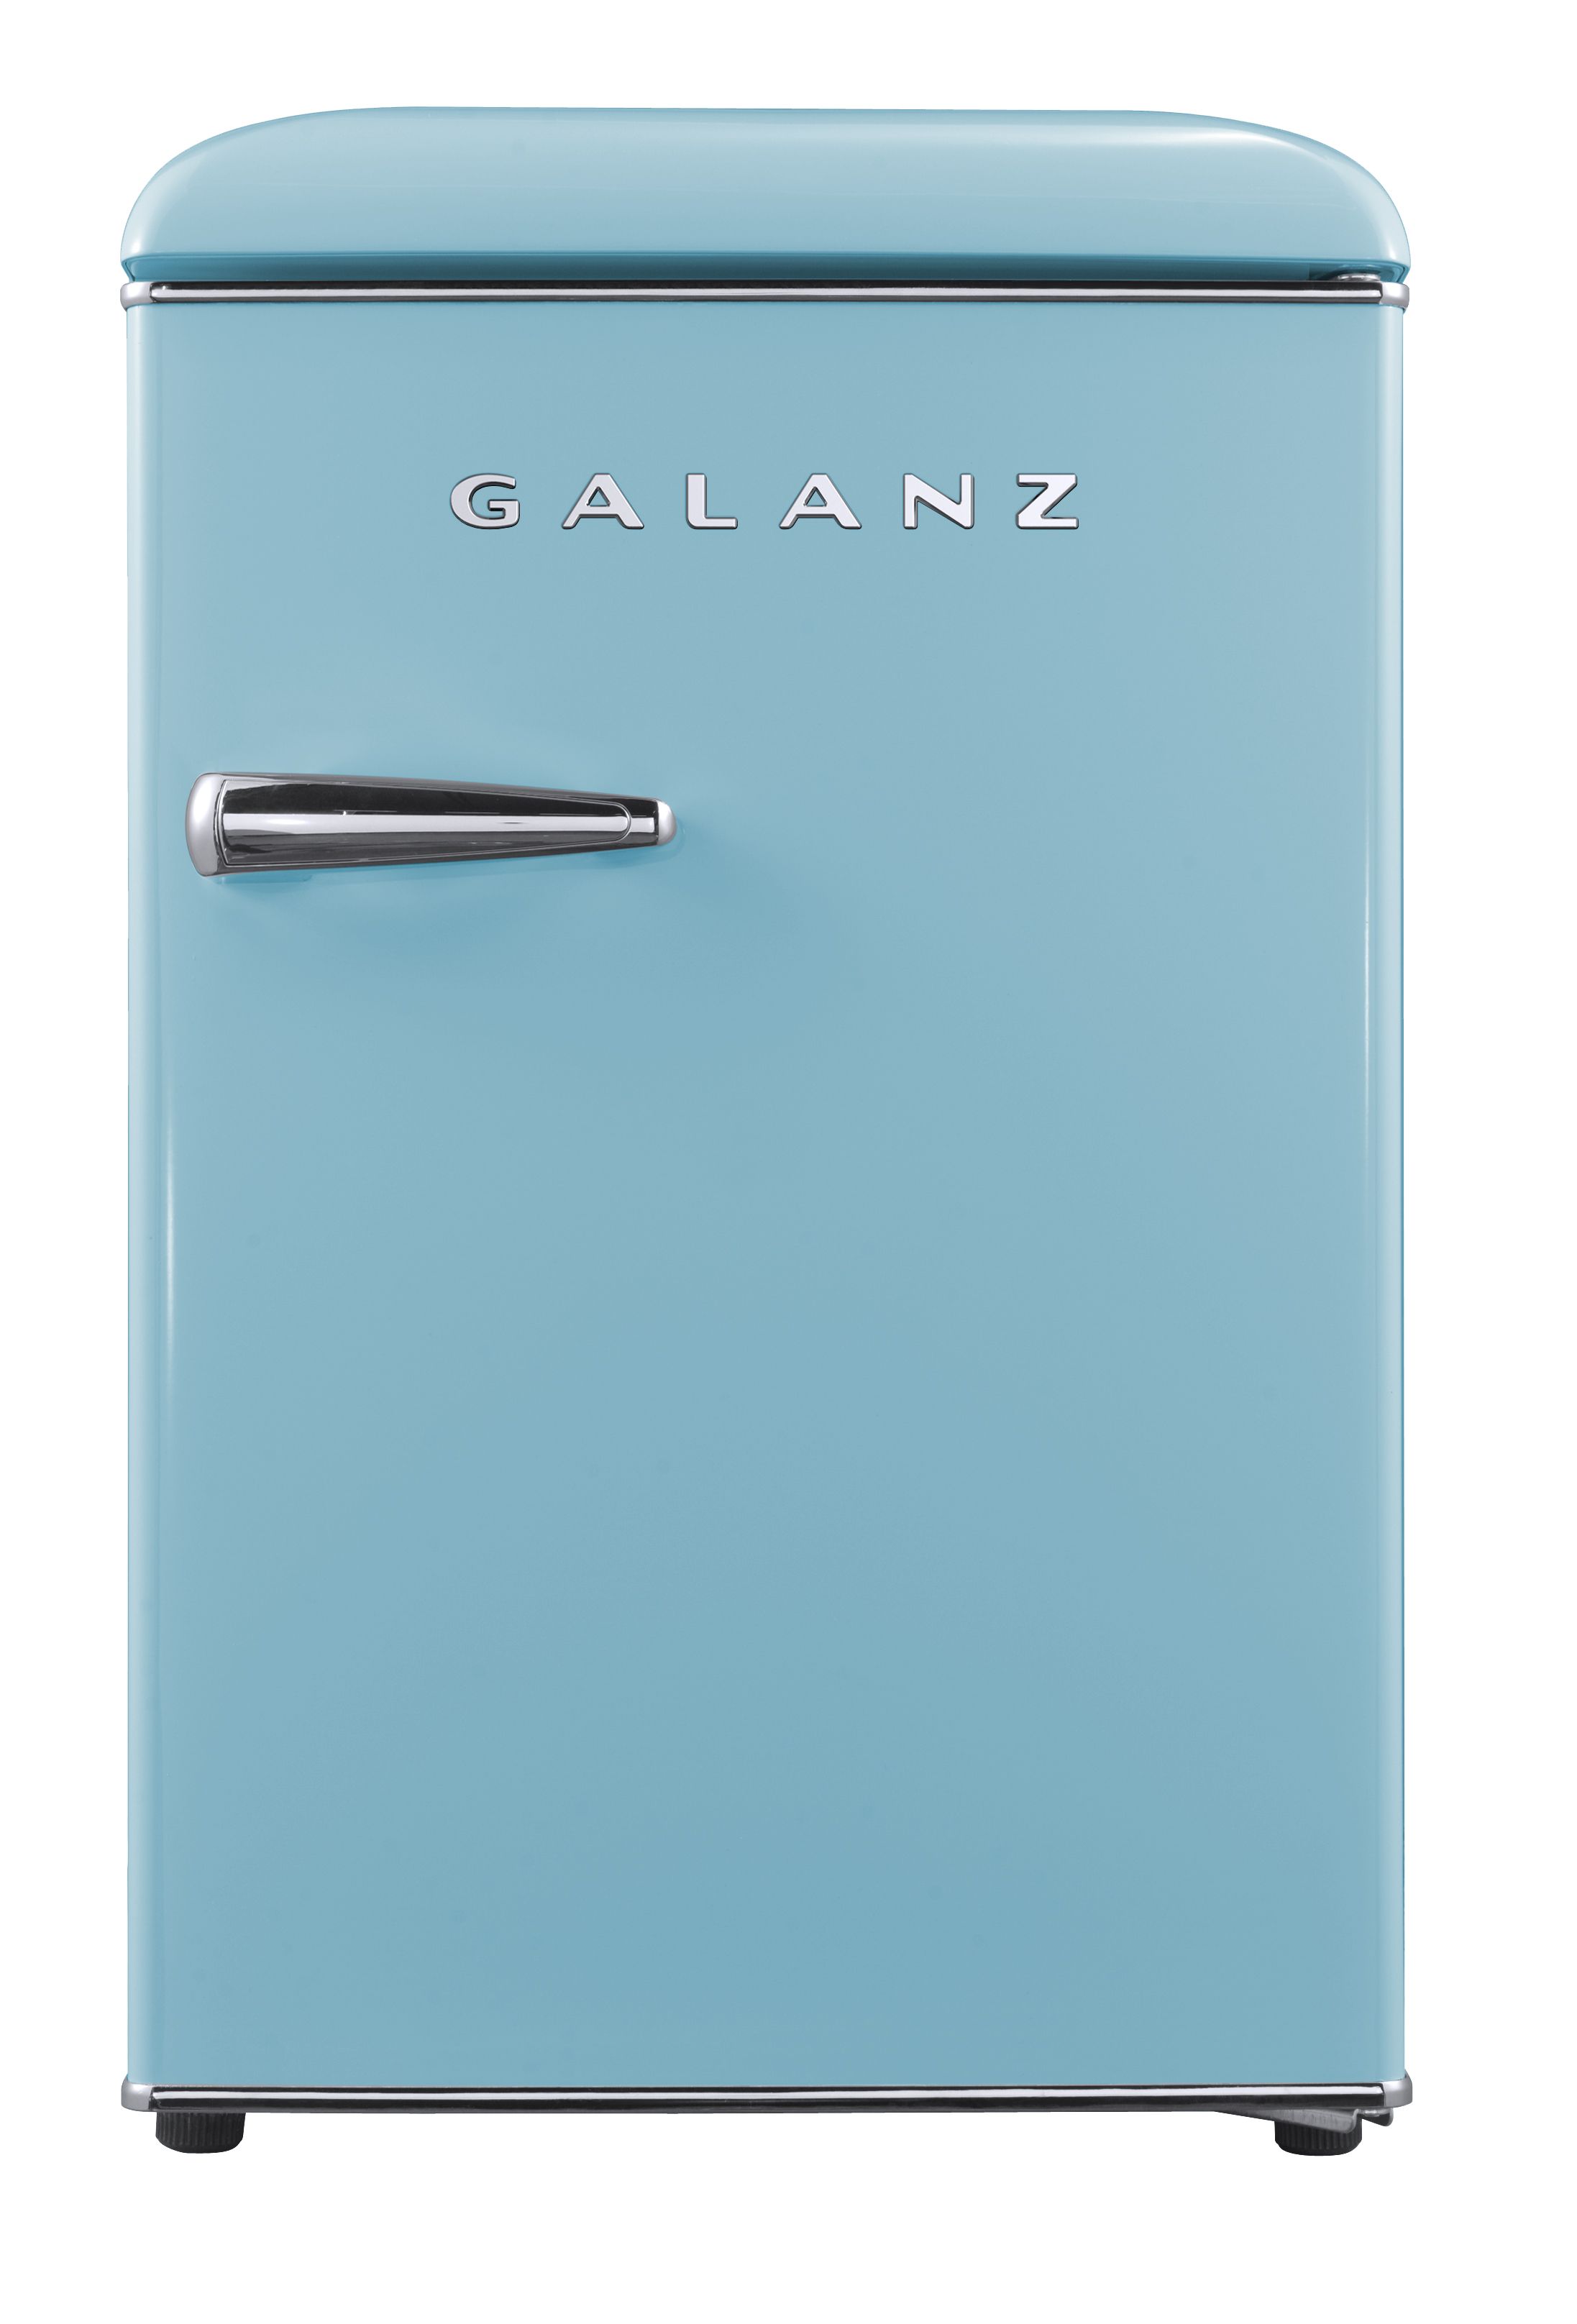 Galanz Cu Retro Refrigerator